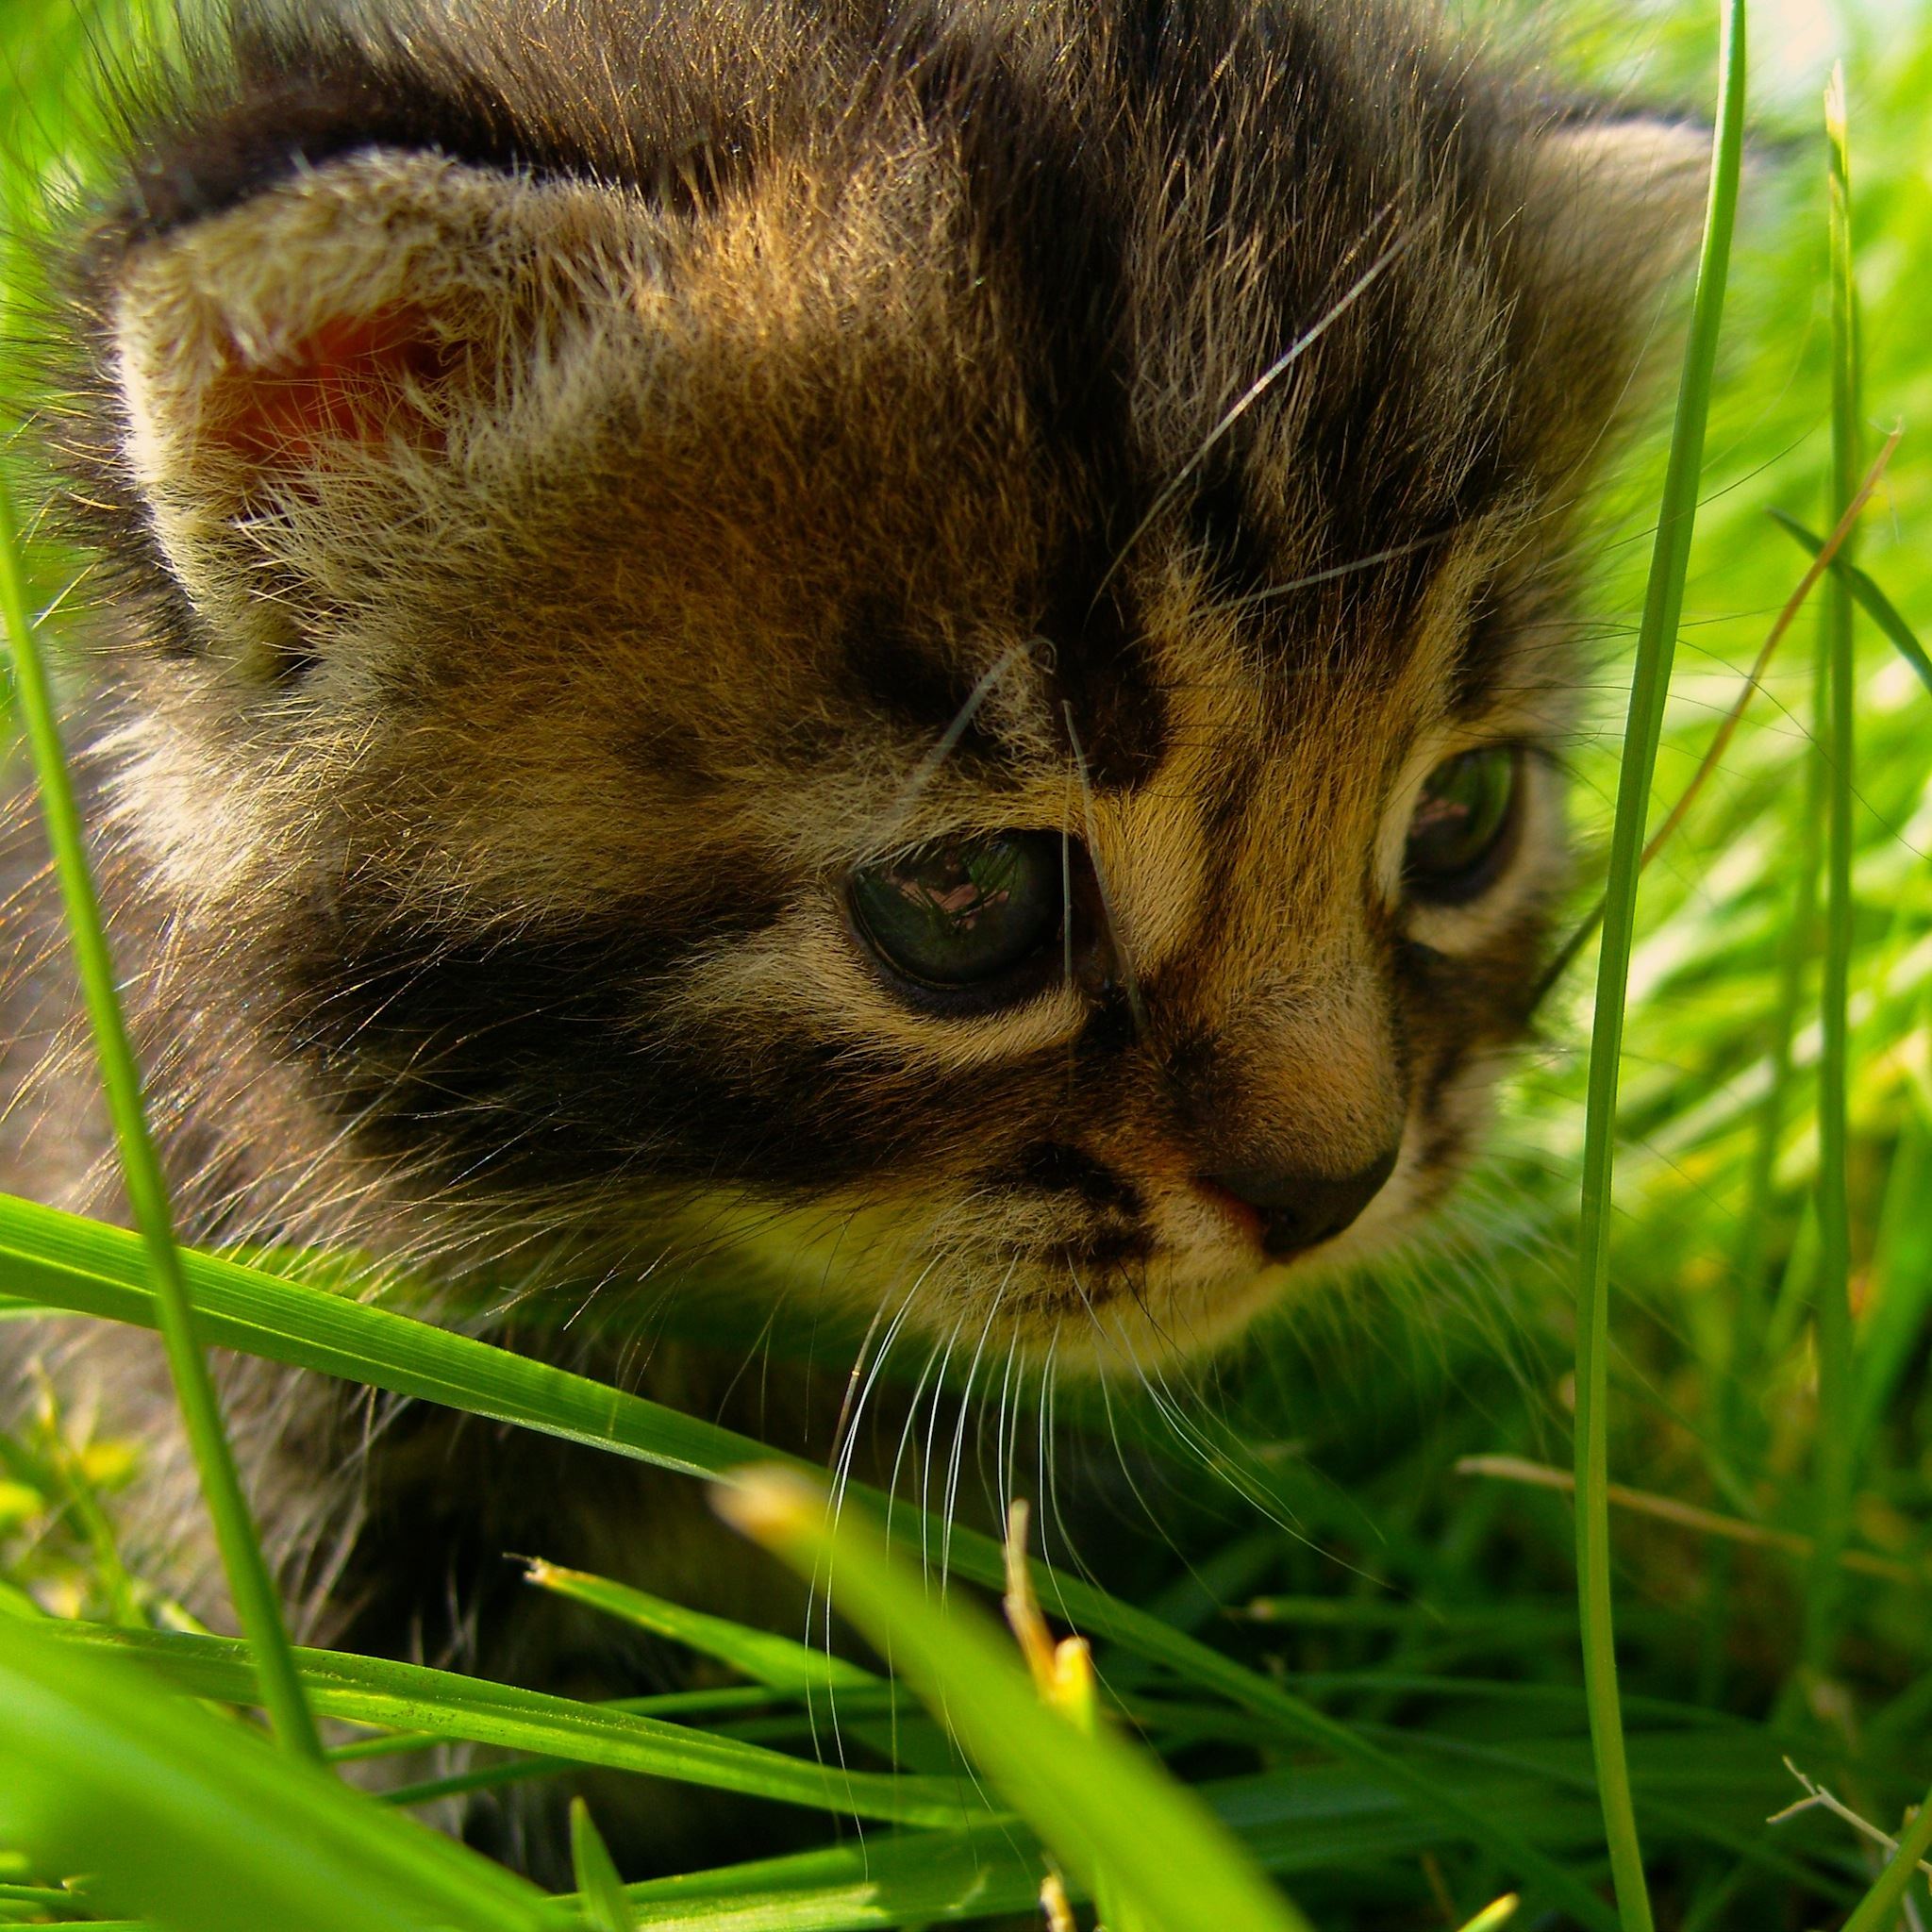 Kitten in Grass iPad Air wallpaper 